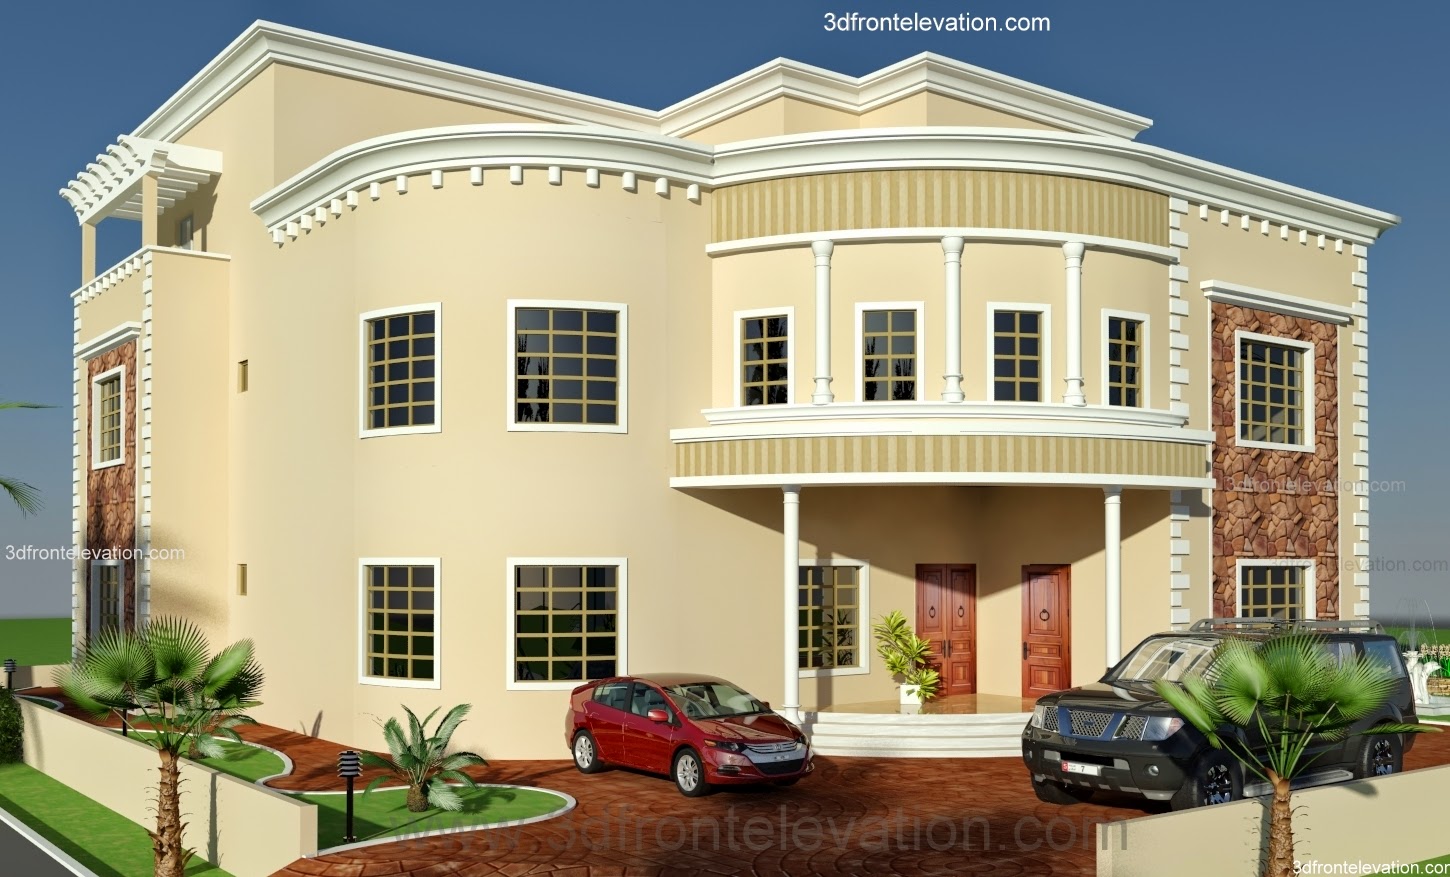  3D  Front Elevation com Oman New Arabian Villa  Plan Design  